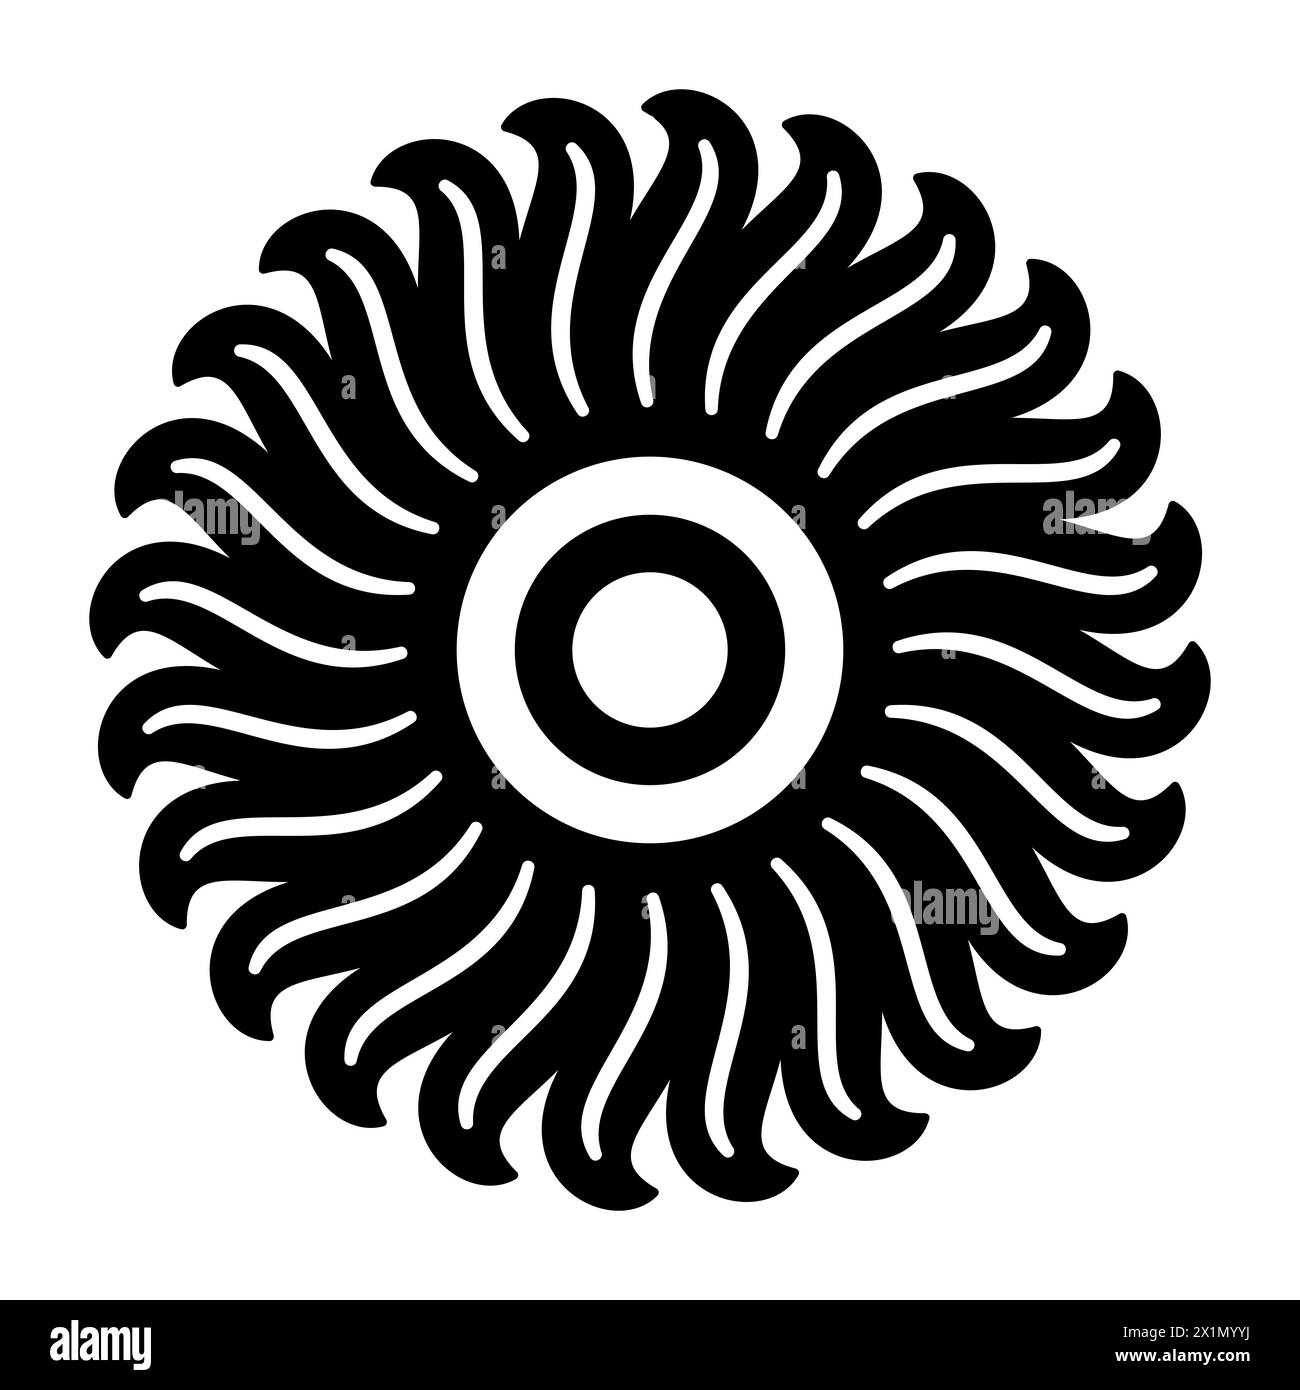 Motif floral et symbole soleil. Signe solaire, cercle entouré de vingt-quatre flammes ou rayons de lumière. Ou aussi une fleur avec des pétales.Noir et blanc. Banque D'Images